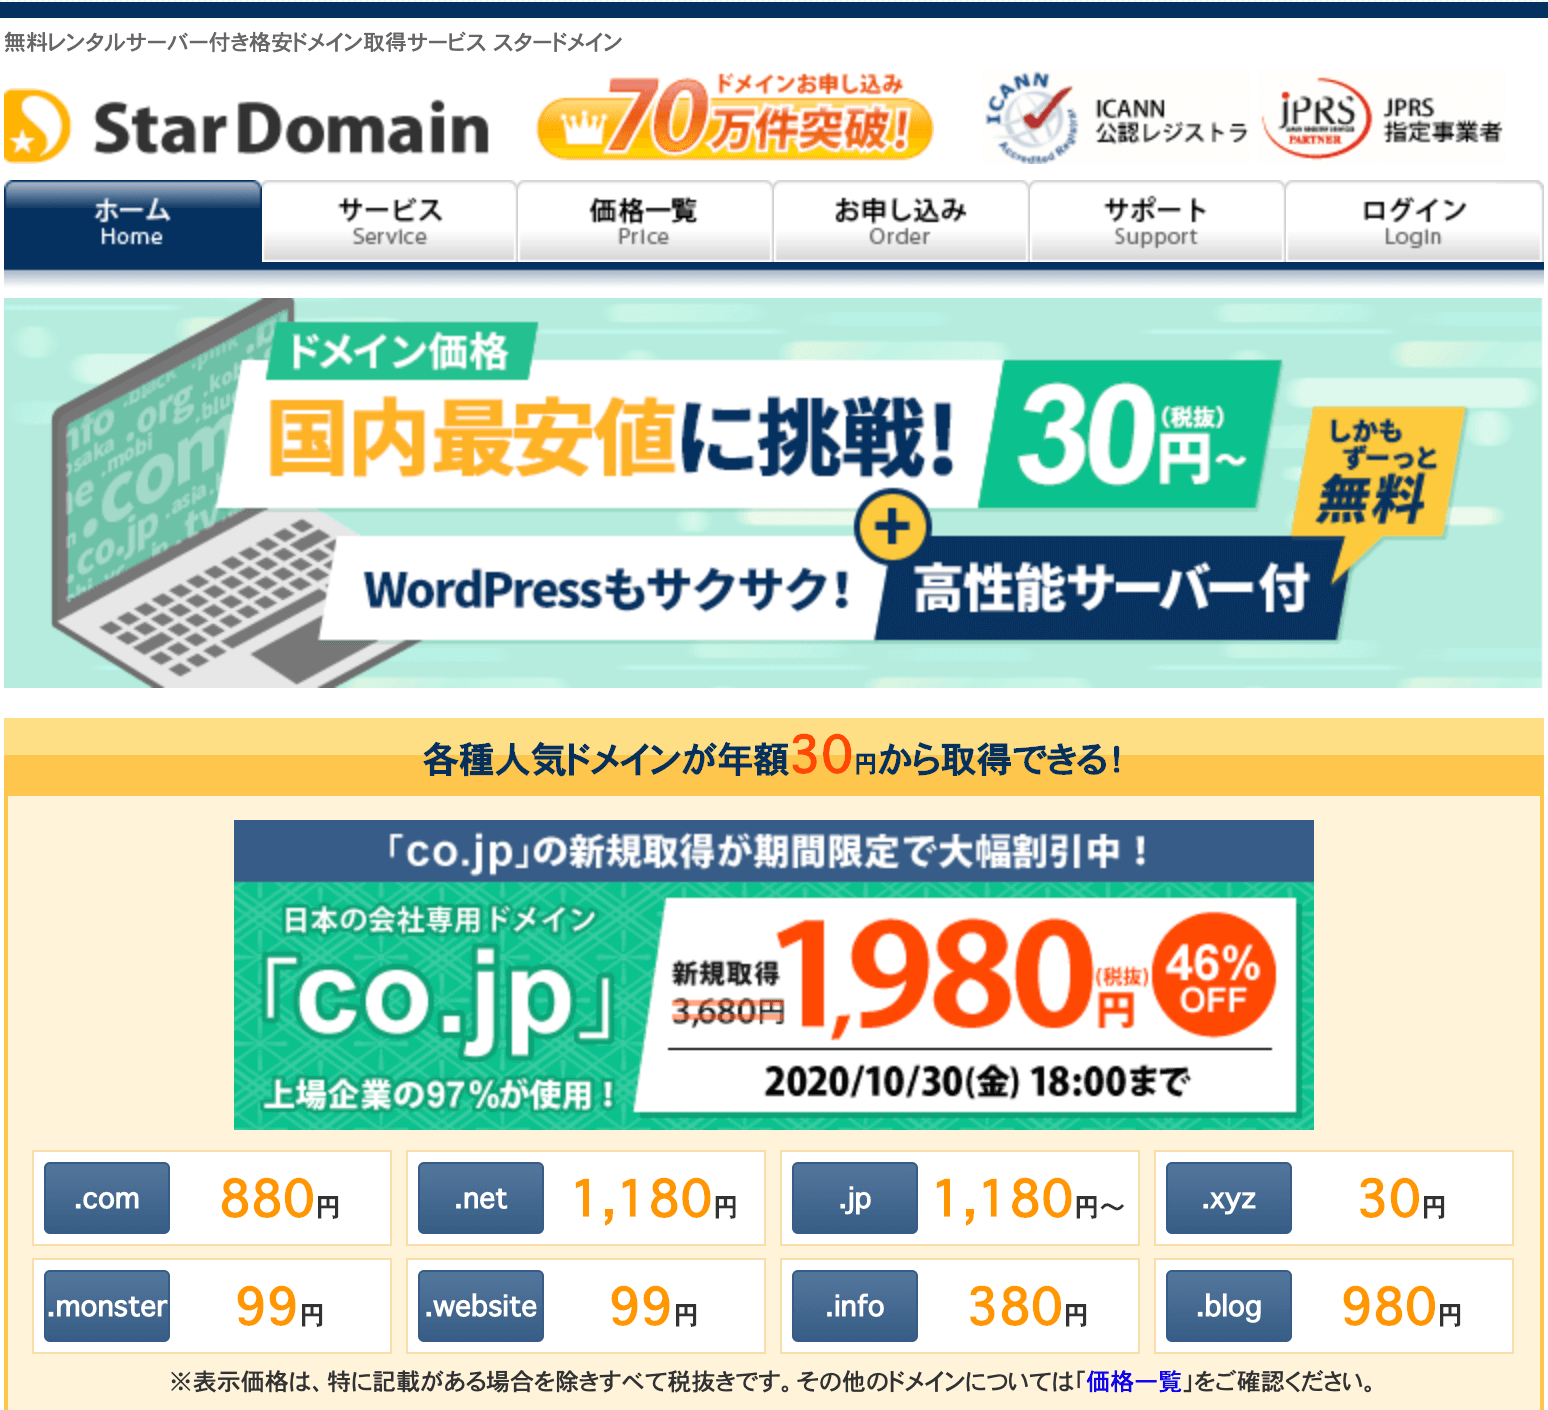 Star Domain（スタードメイン）